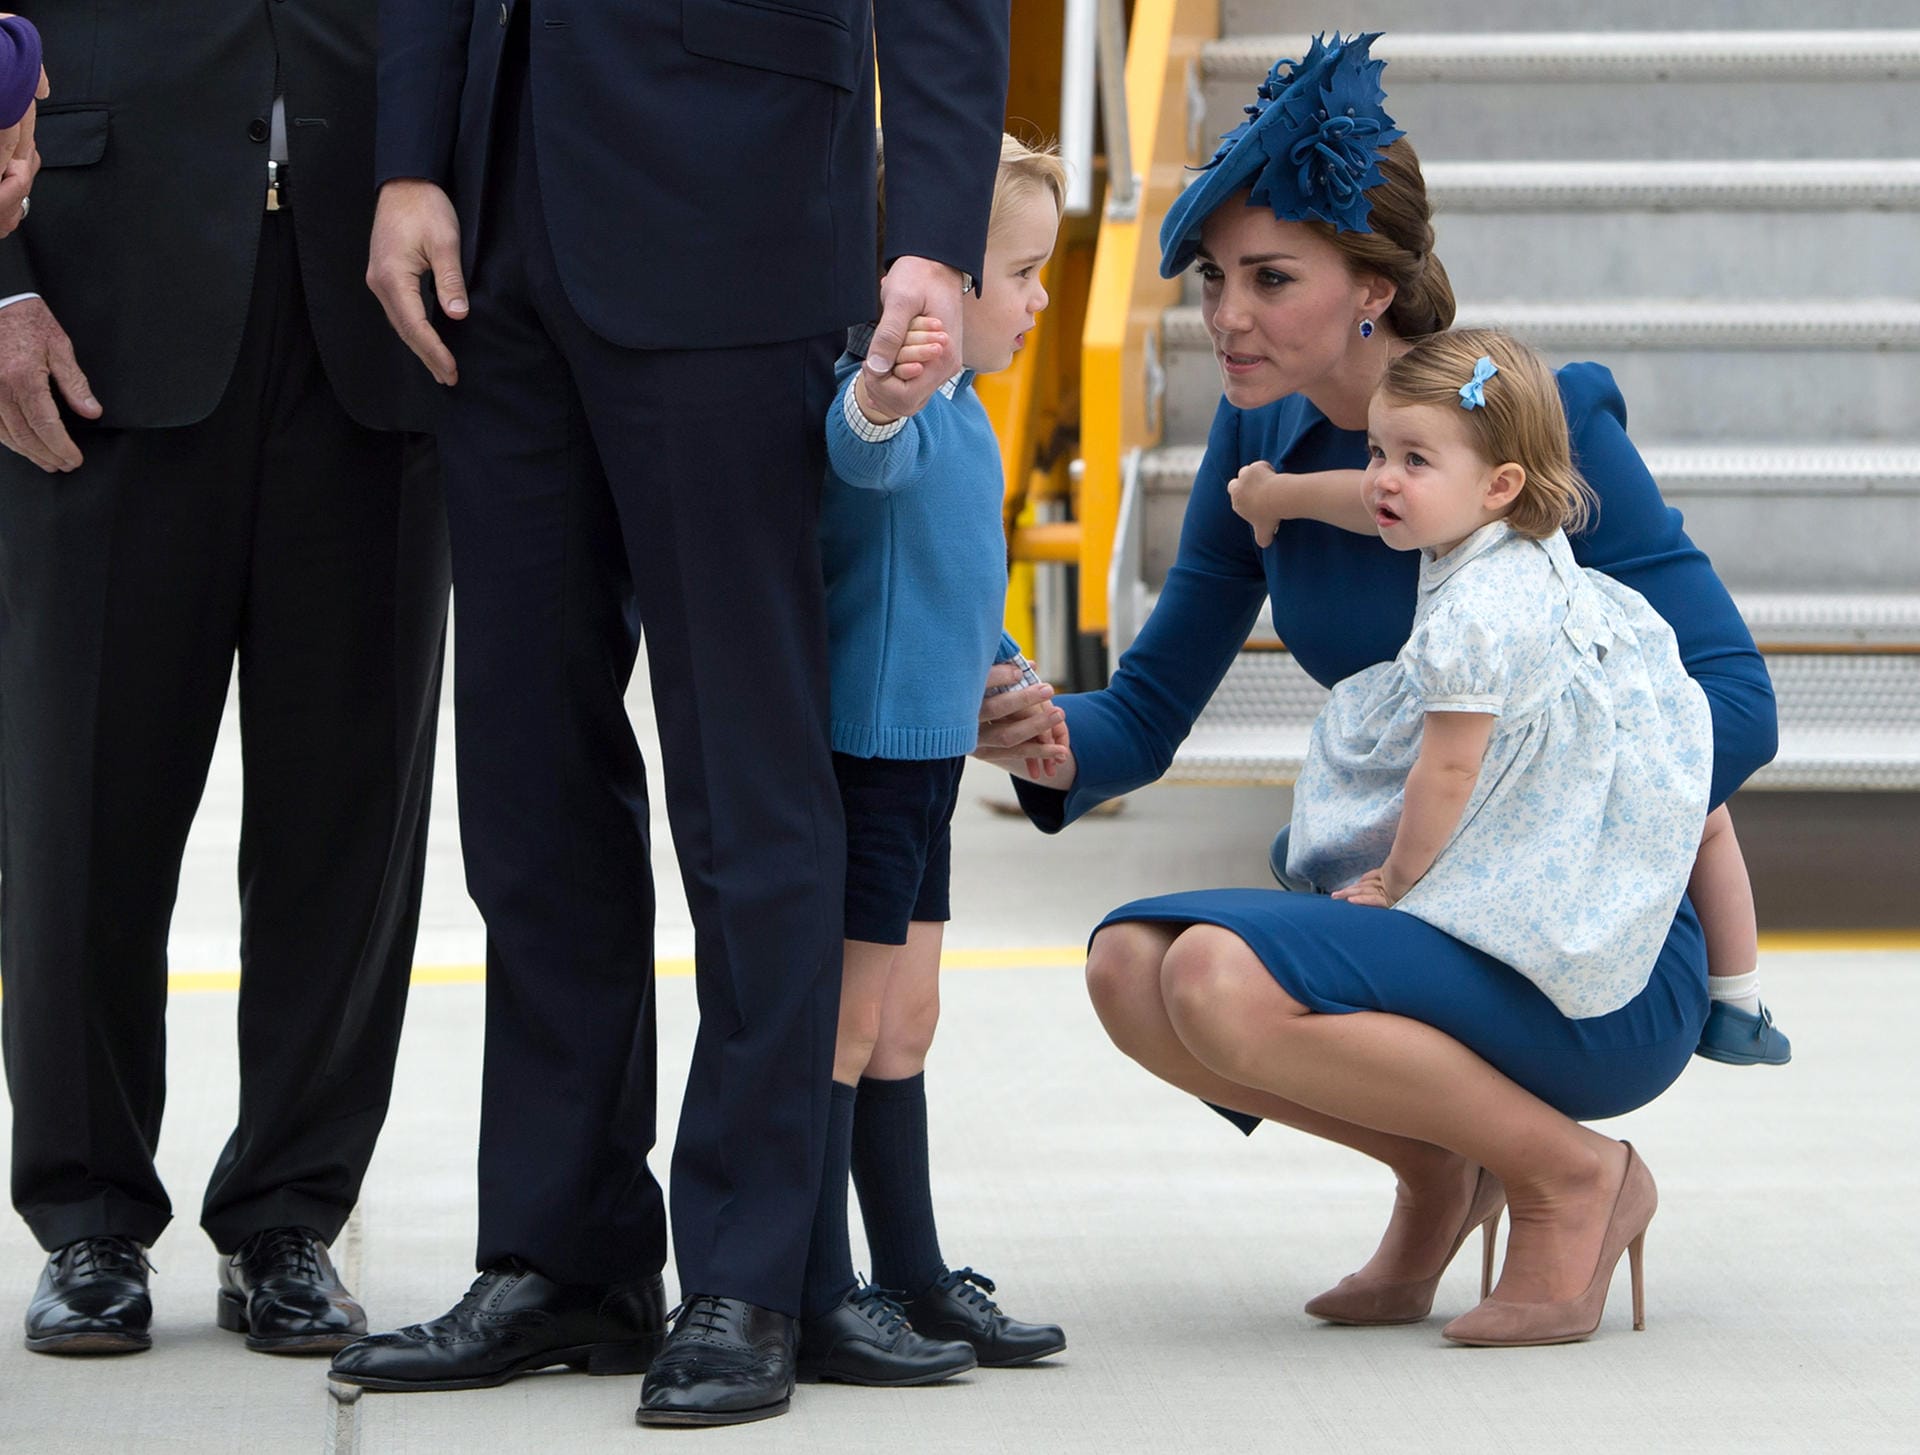 Für die kleine Charlotte ist die große Reise der erste Auslandsaufenthalt überhaupt. Zusammen mit Brüderchen George stahl die kleine Prinzessin bereits bei der Ankunft am Flughafen ihren Eltern William und Kate die Show.